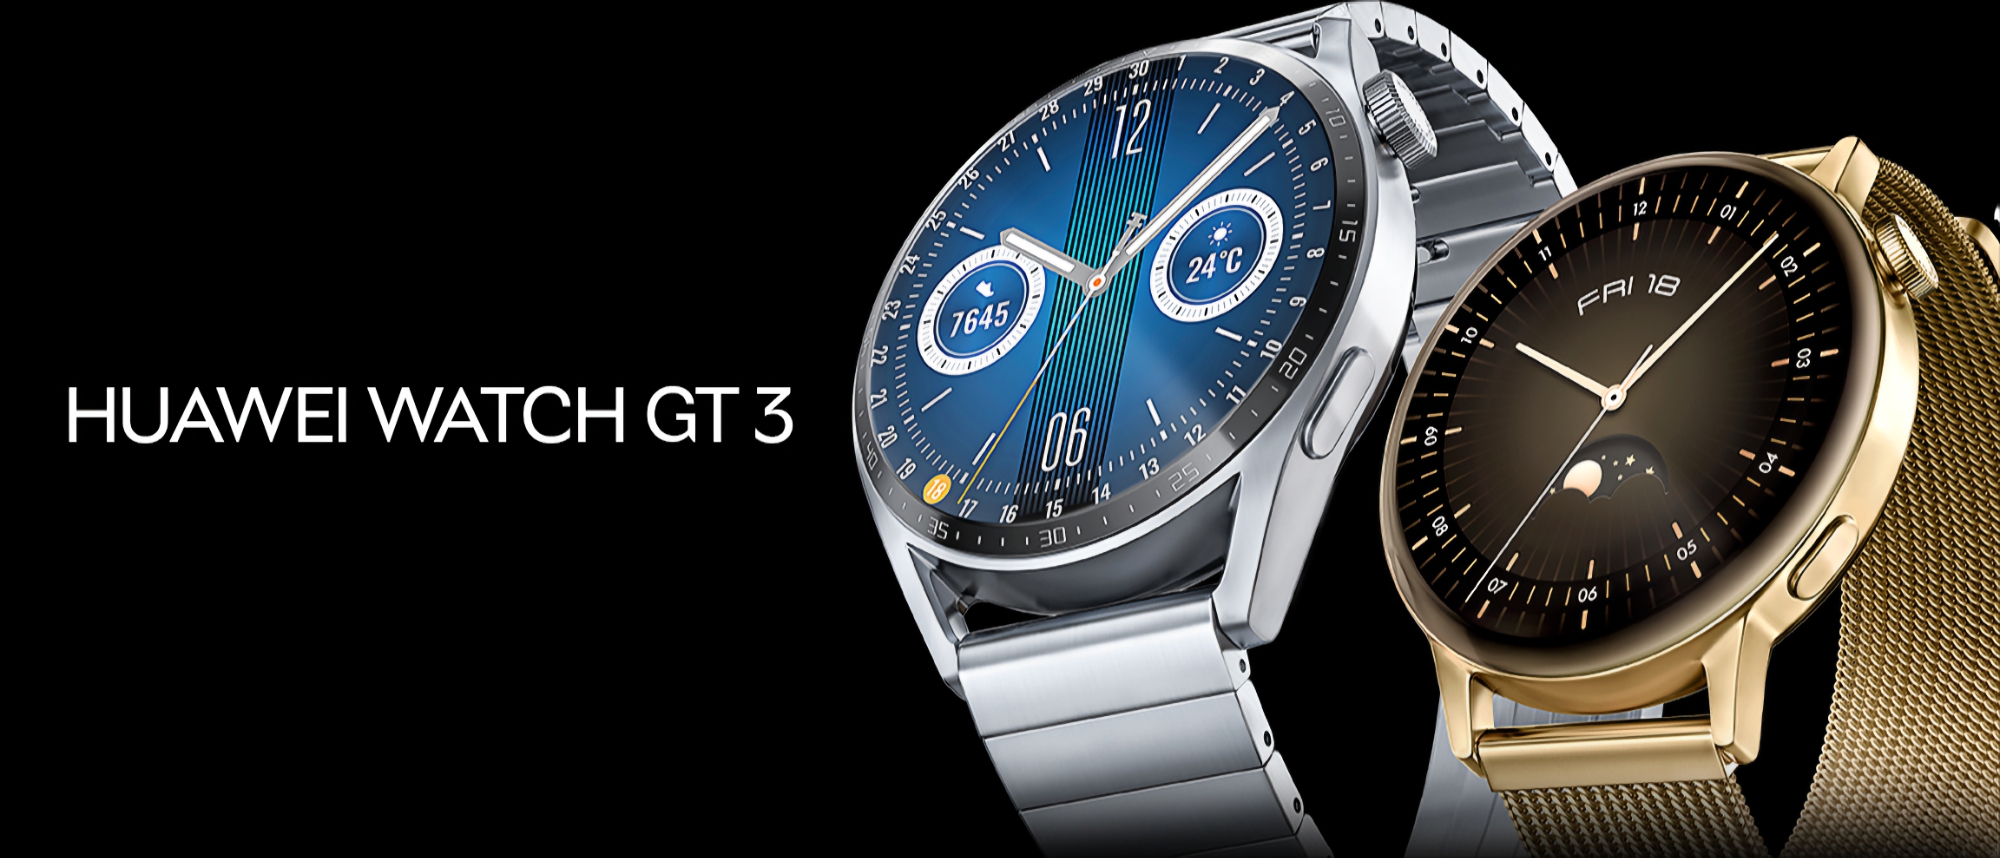 El smartwatch Huawei Watch GT 3 recibe una nueva actualización de software